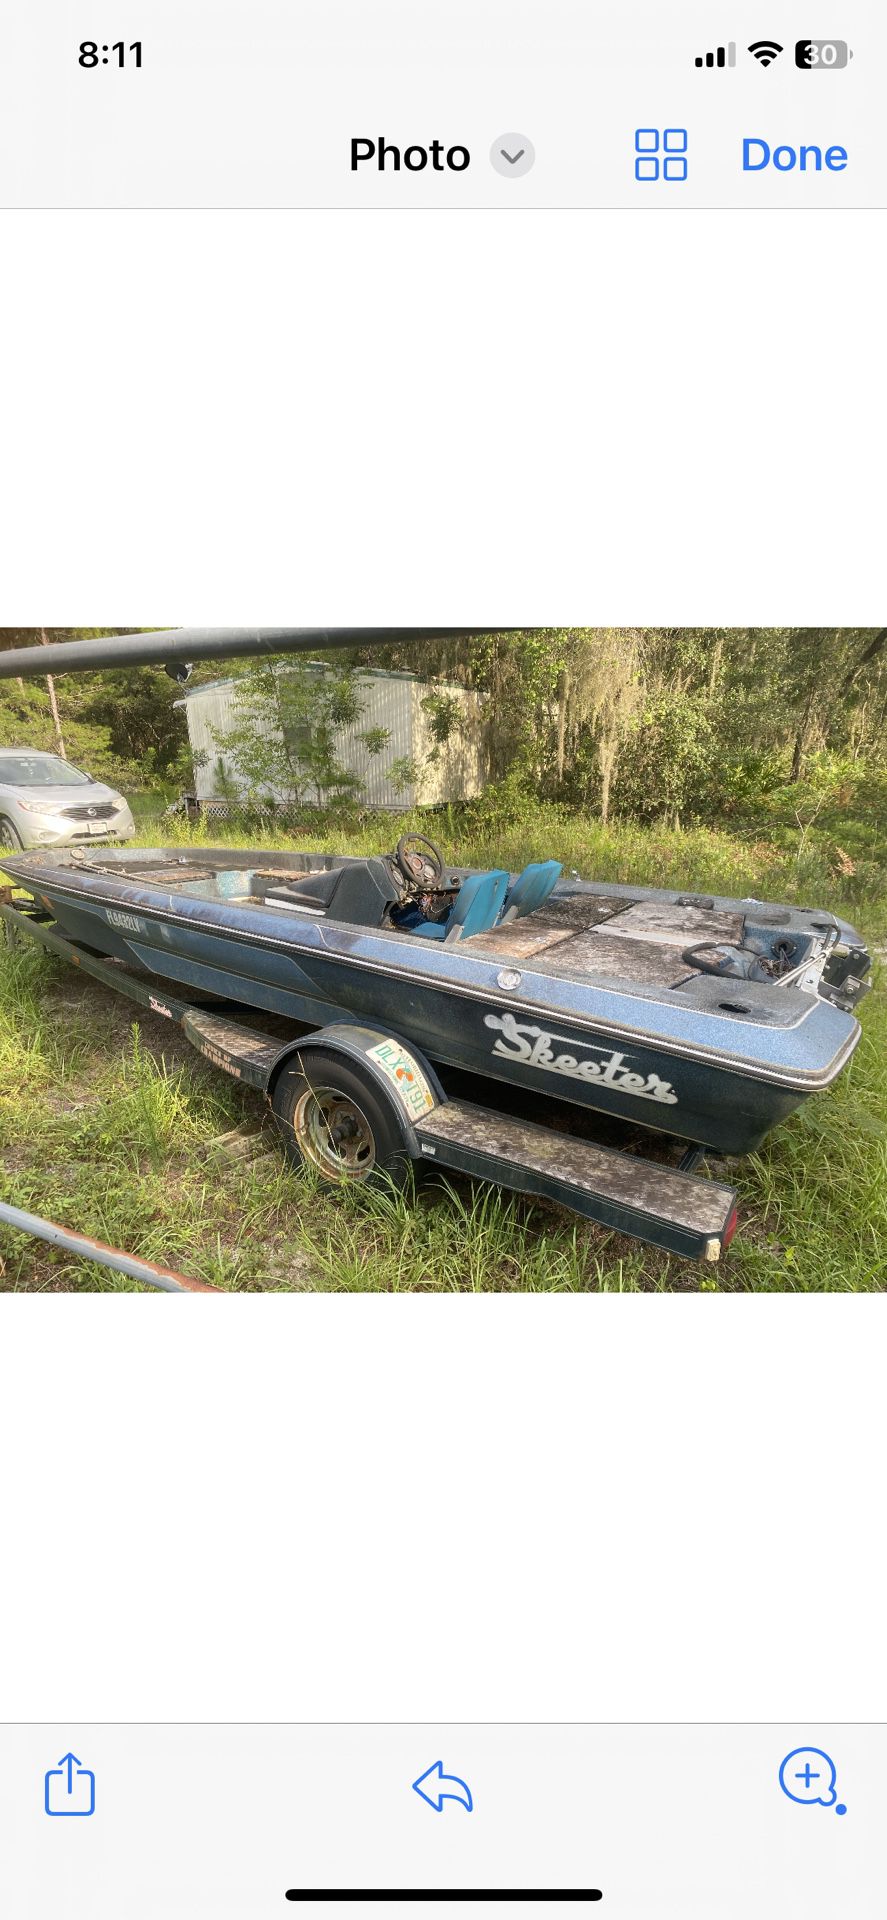 1984 Skeeter 16’ Bass boat